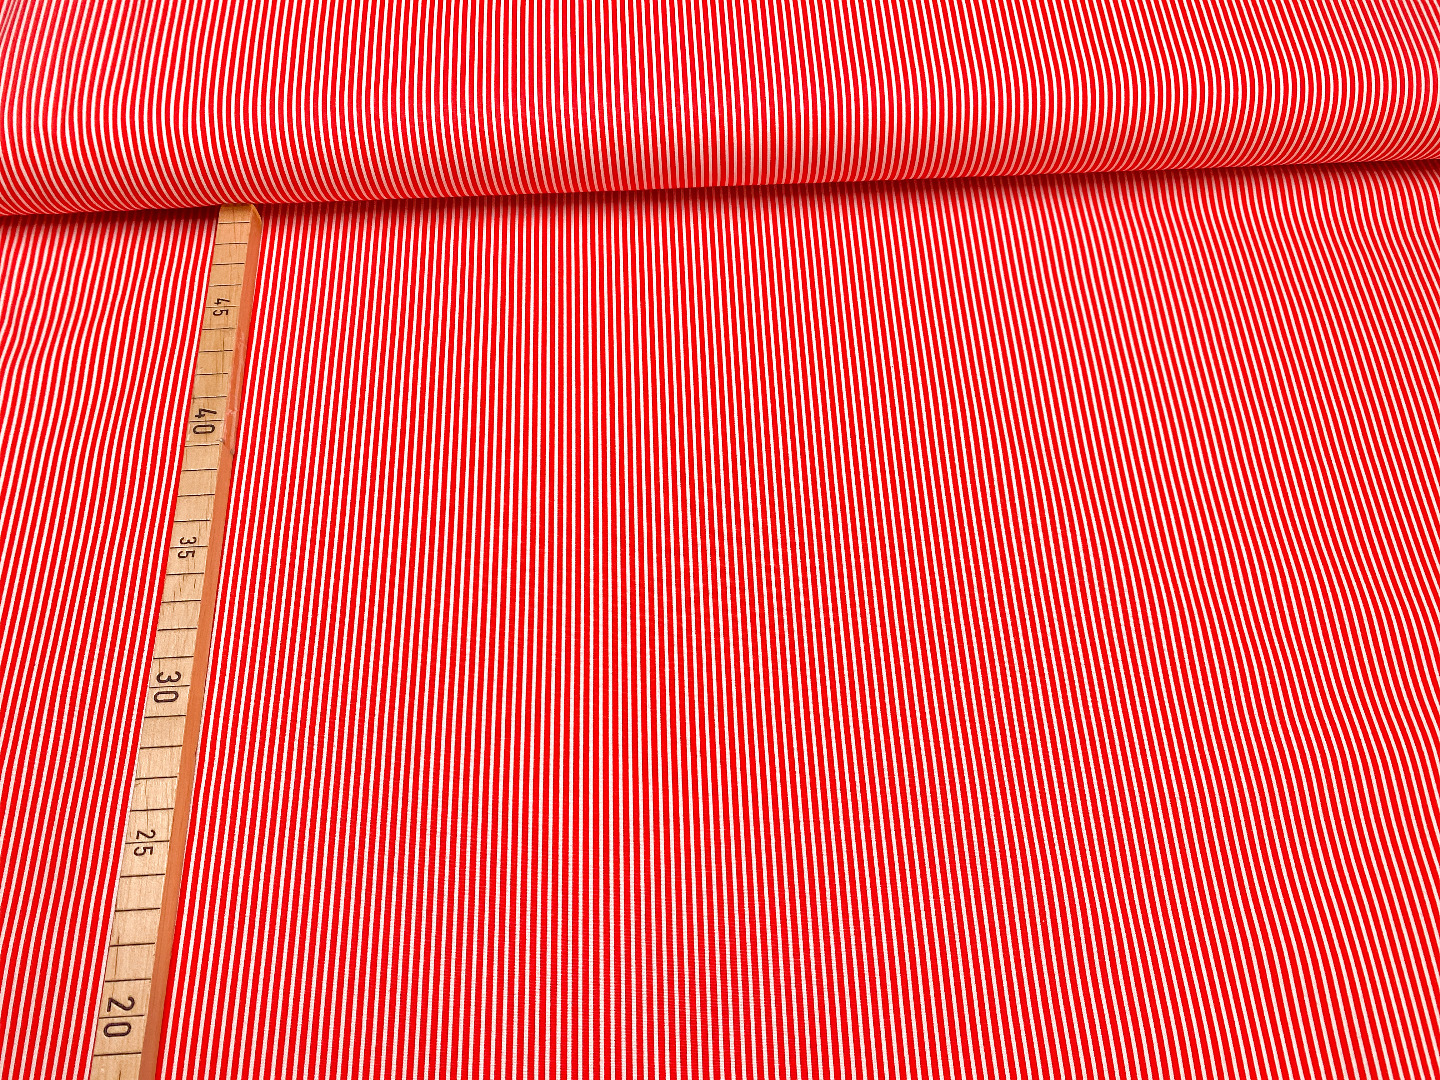 Stoff Streifen - rot/weiß - 100% Baumwolle | 9,00 EUR/m 2